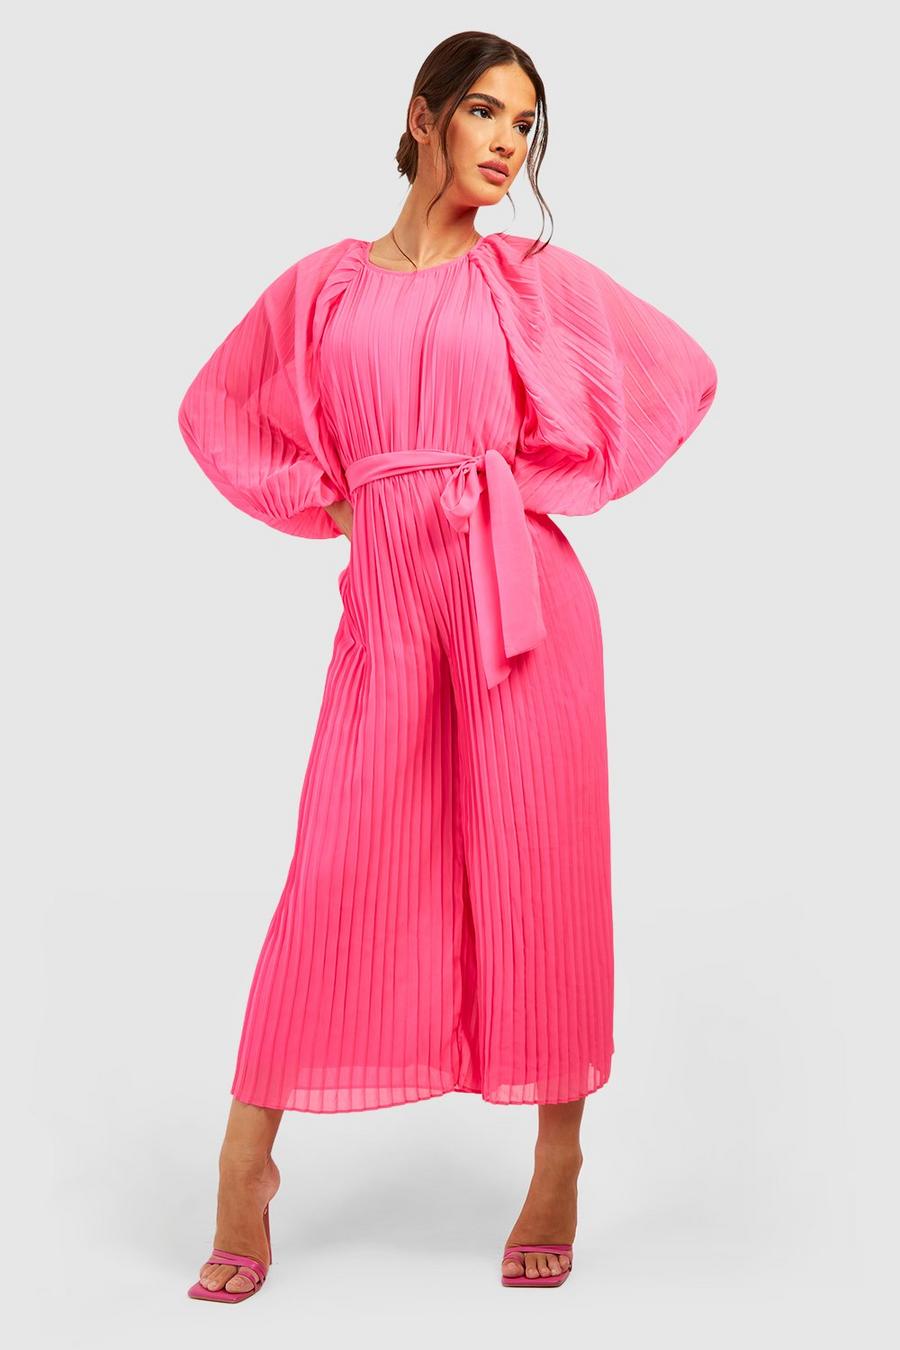 Combinaison jupe-culotte plissée, Hot pink